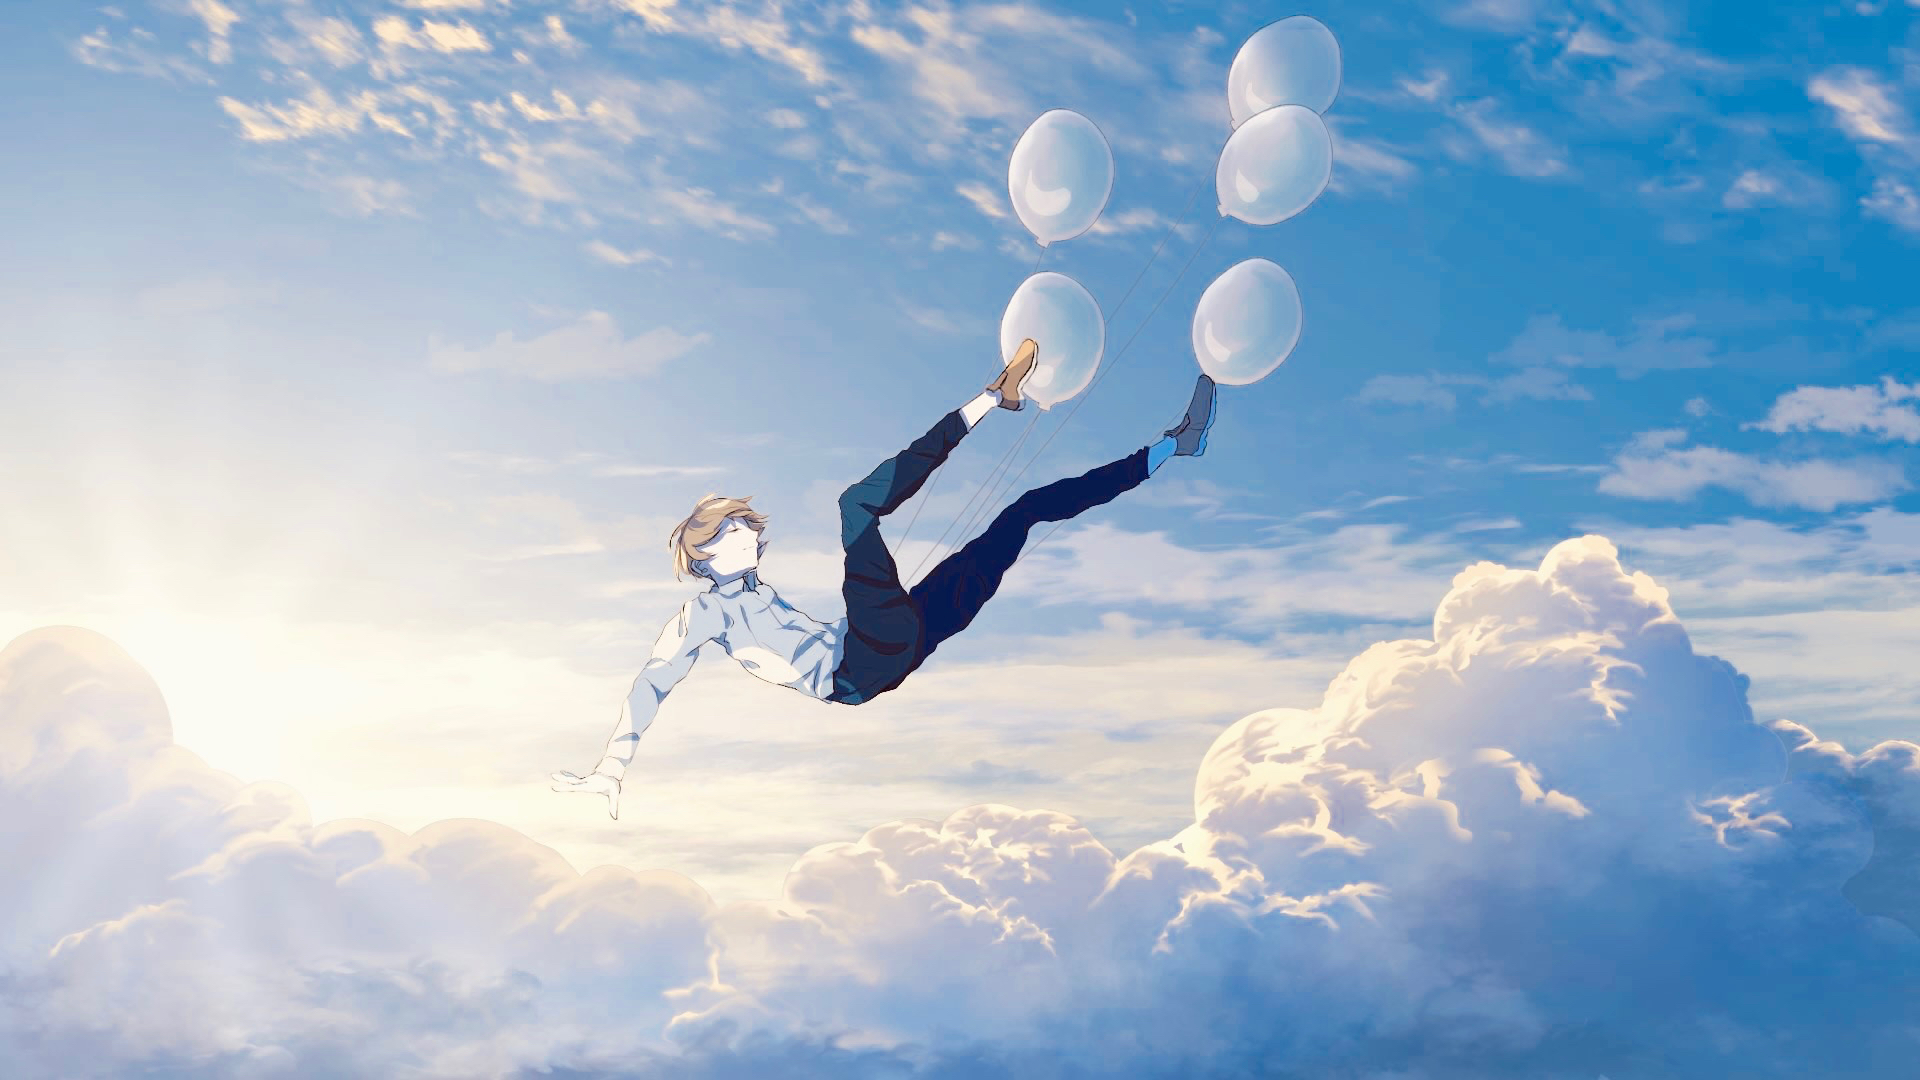 Скачать обои бесплатно Аниме, Небо, Облака, Воздушный Шар, Кукла картинка на рабочий стол ПК